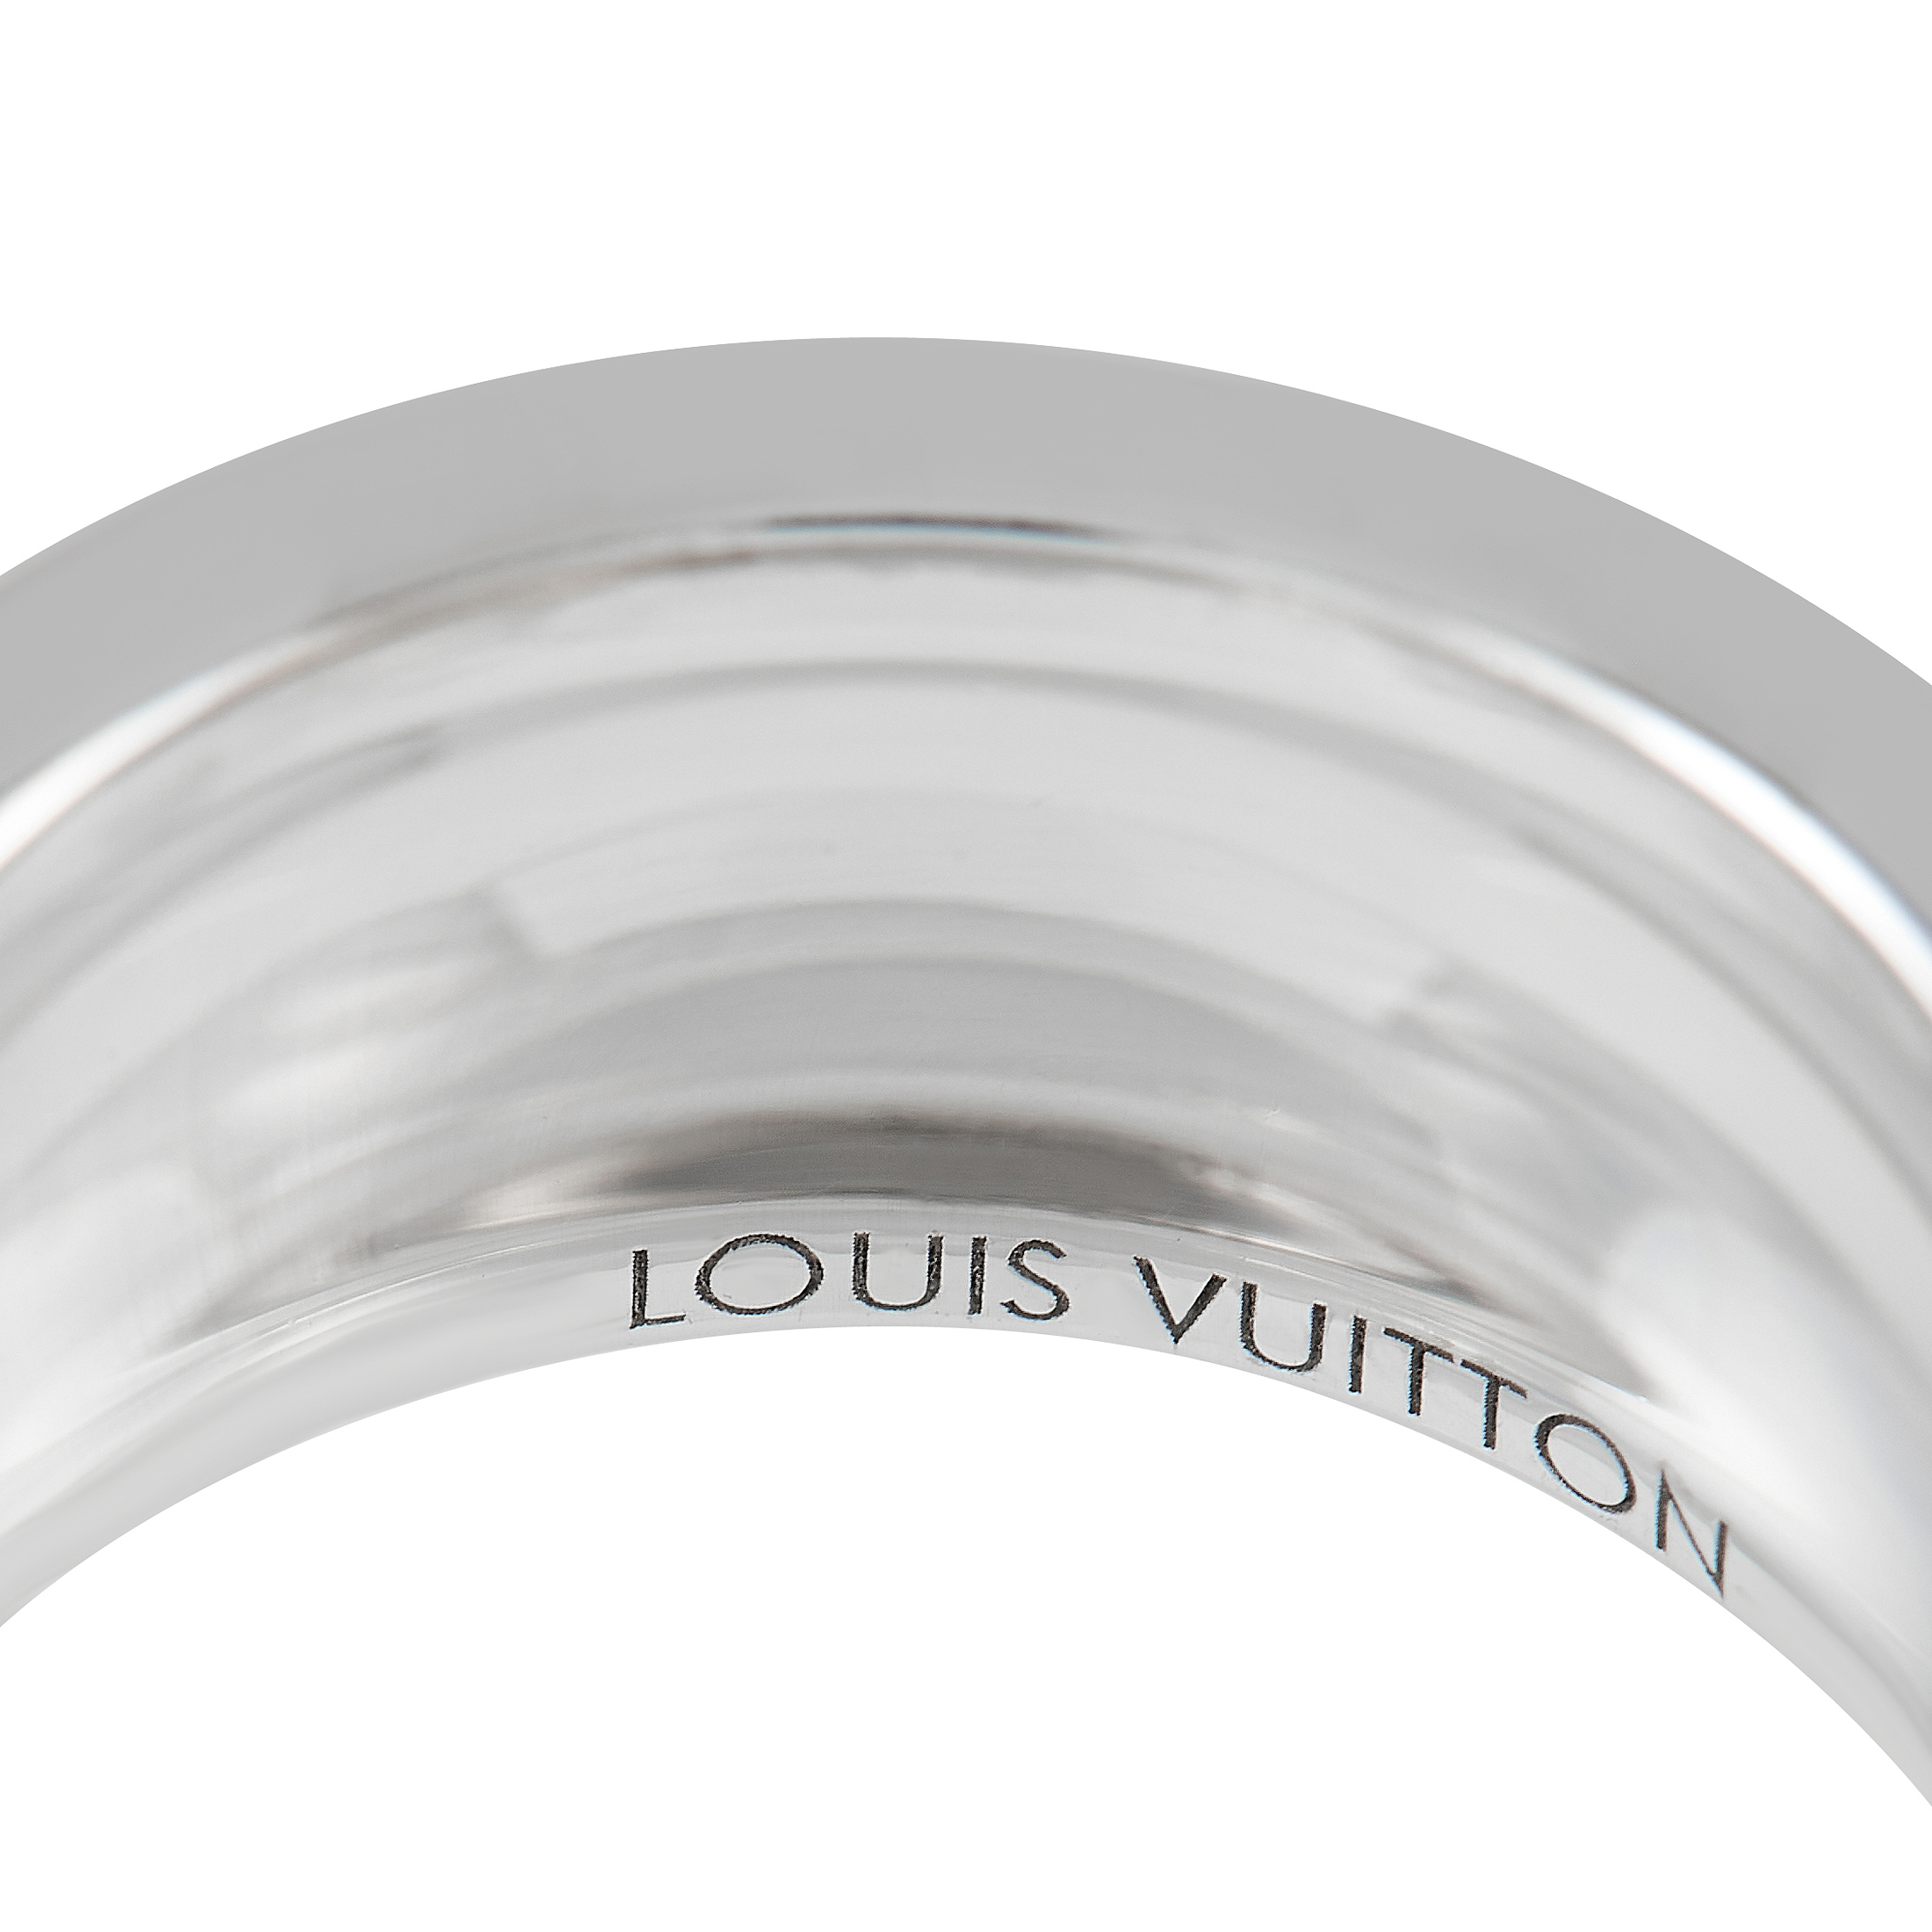 LOUIS VUITTON Empreinte Bangle, White Gold And Diamonds Grey. Size S